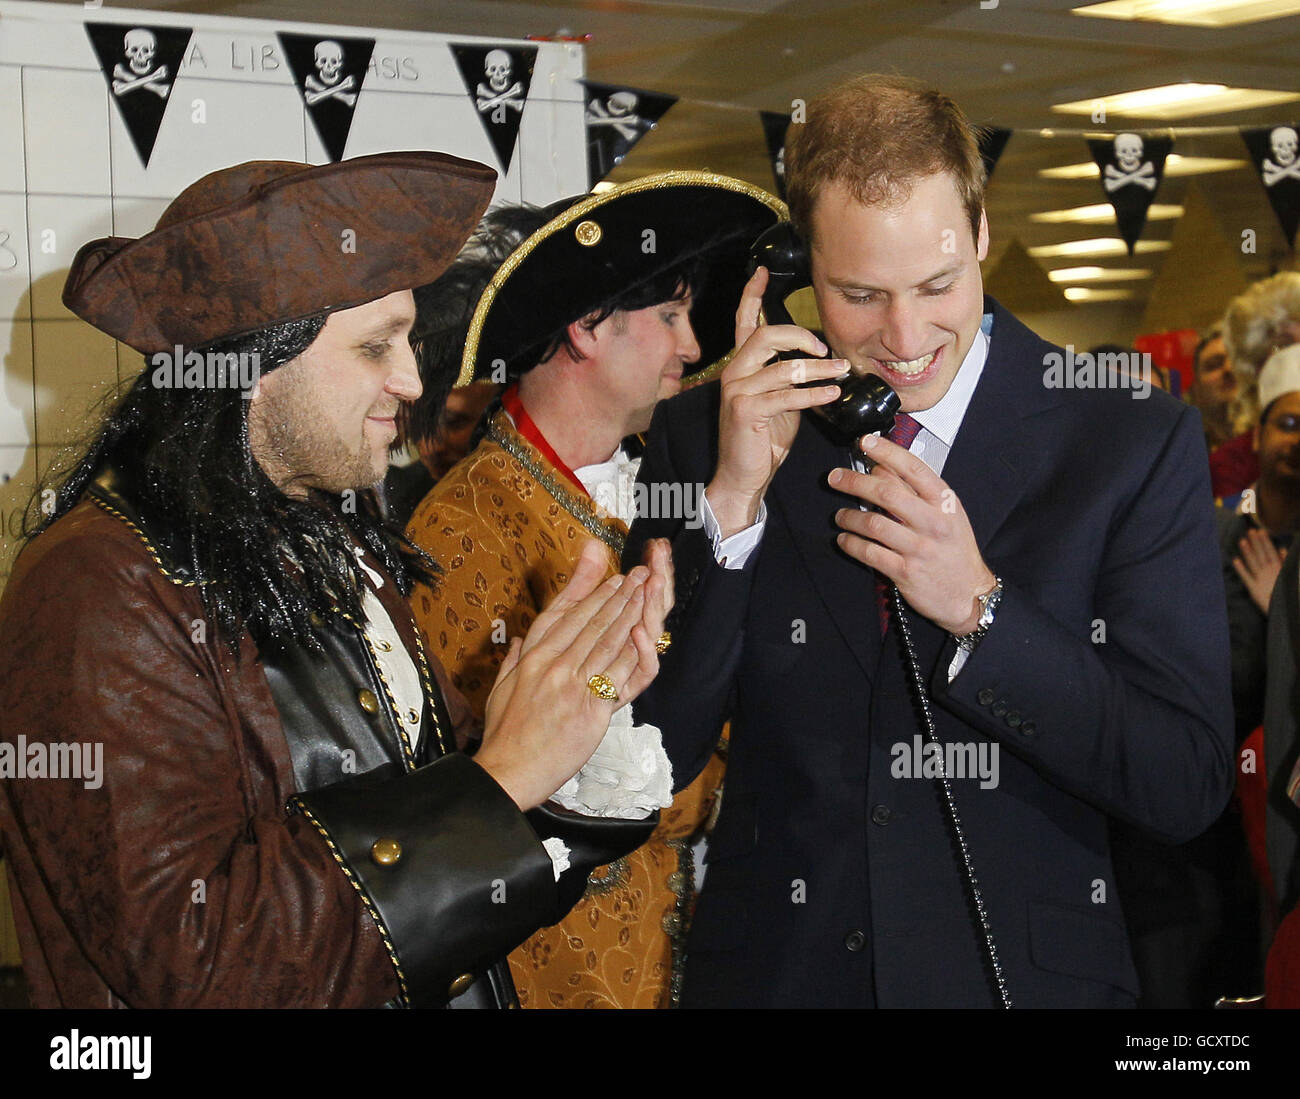 Le Prince William termine une transaction téléphonique à l'ICAP alors qu'il participe à la Journée annuelle des œuvres caritatives de l'ICAP à Londres. Banque D'Images